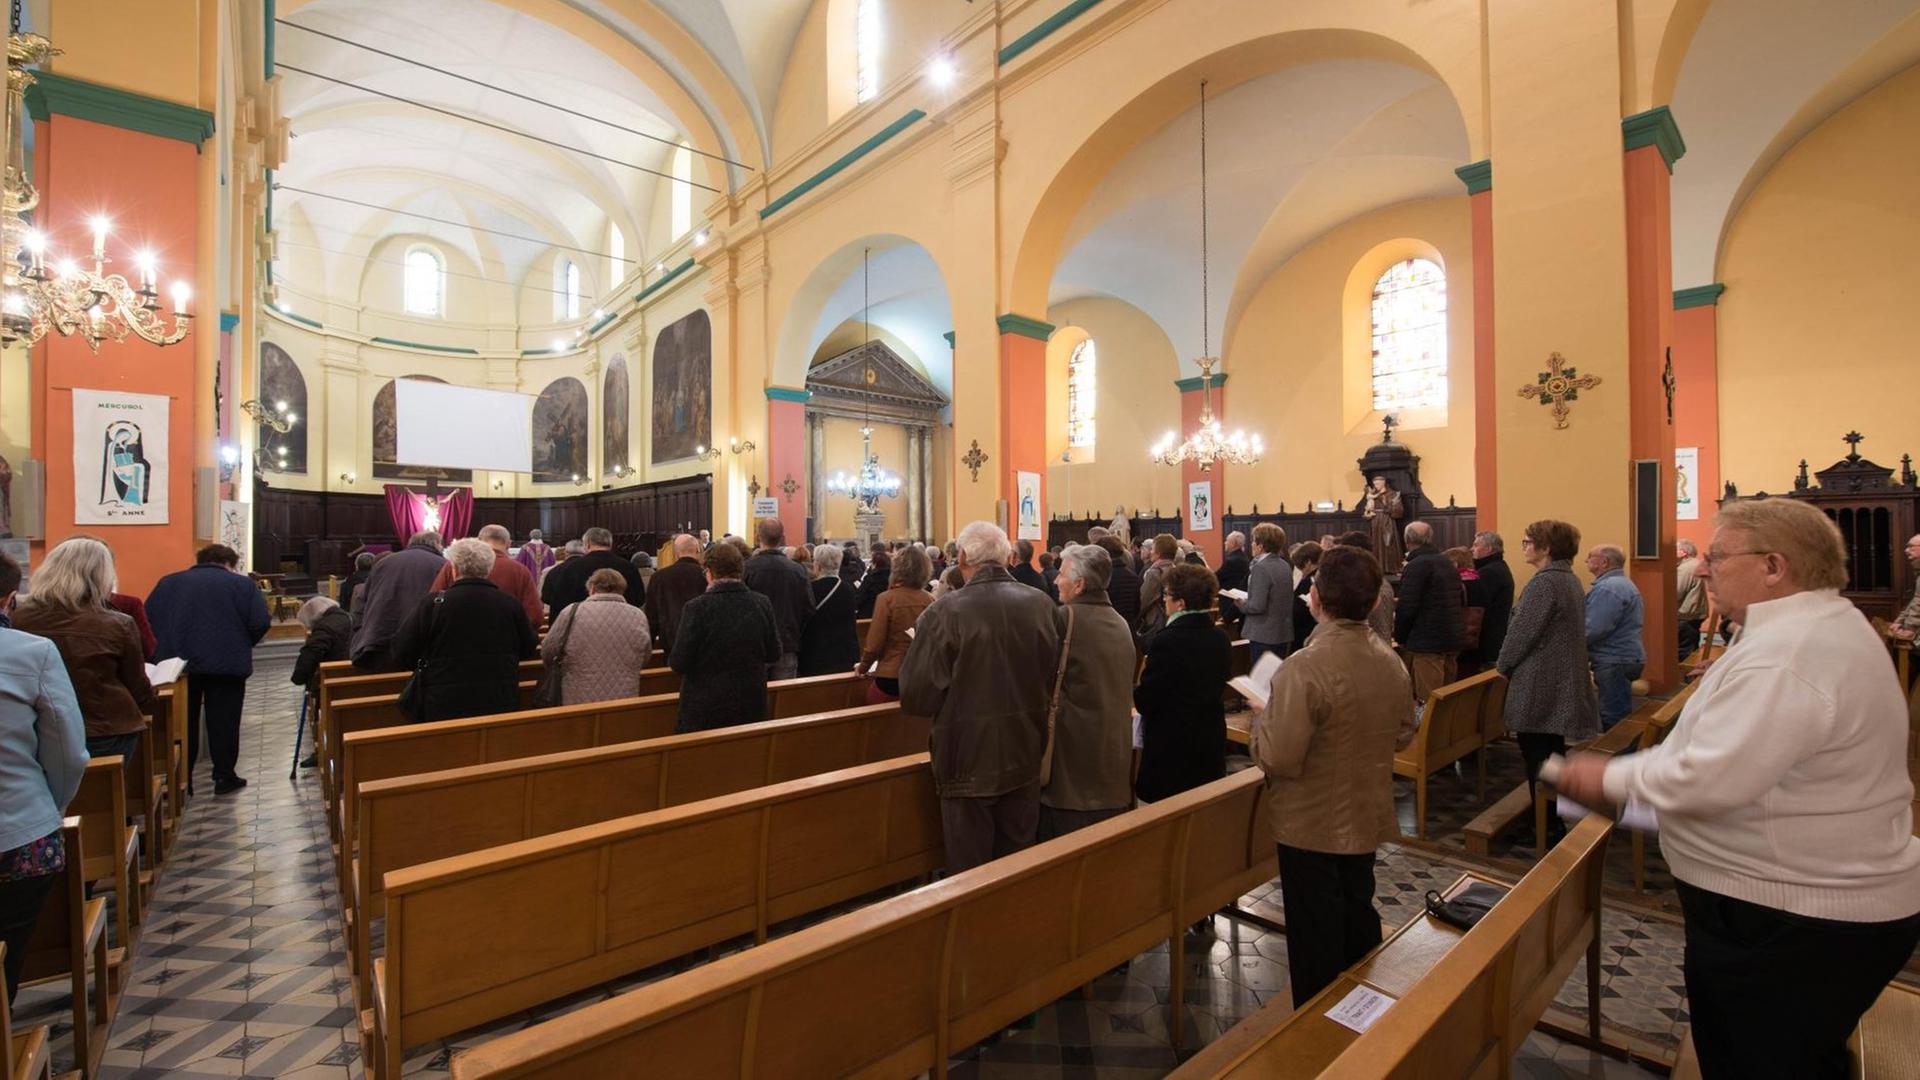 Totale einer Kirche in Tain während des Gottesdienstes